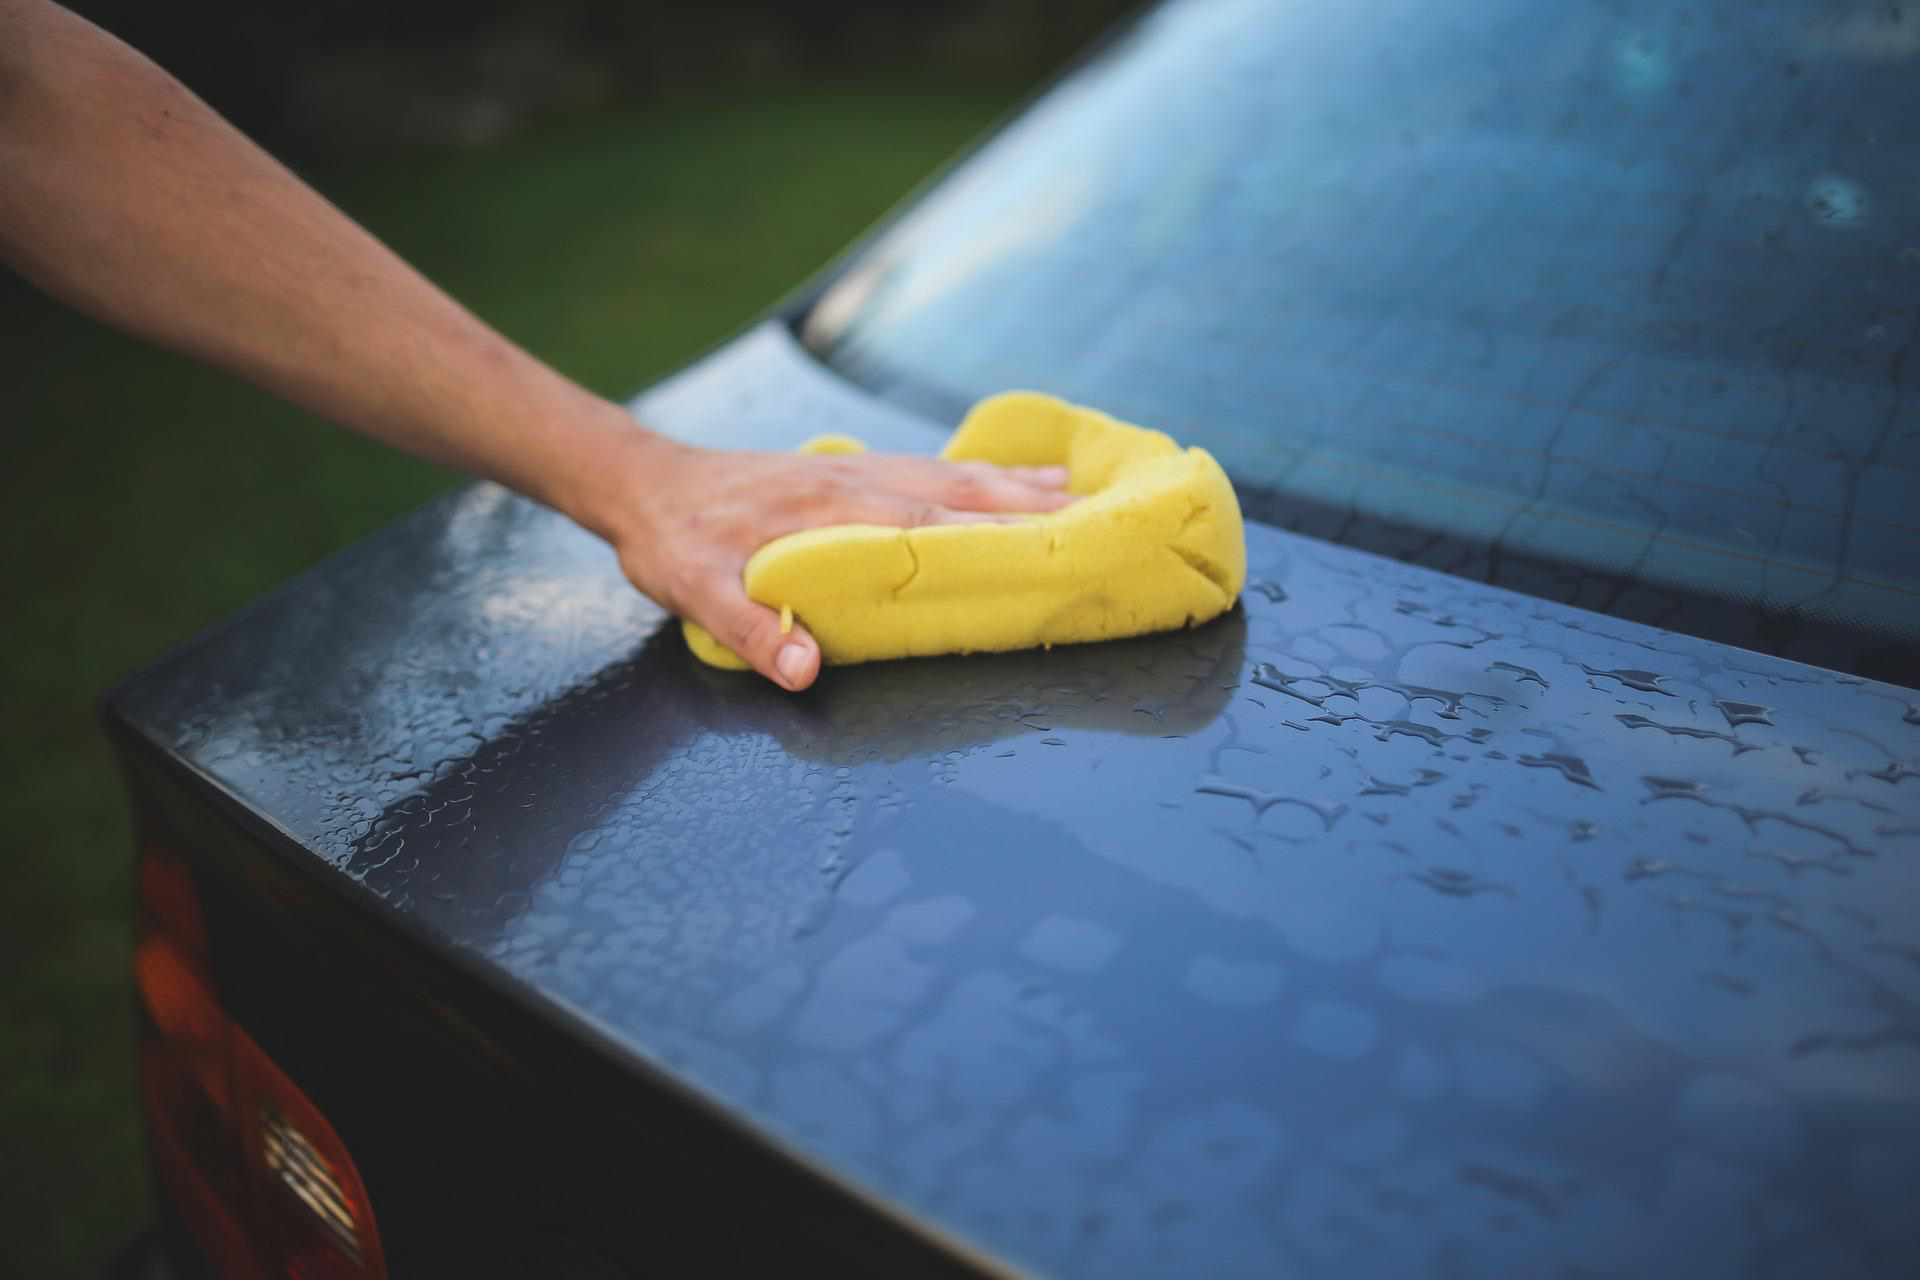 El propietario del automóvil seca la tapa del maletero del Honda Civic después de lavar el automóvil en un campo cubierto de hierba.